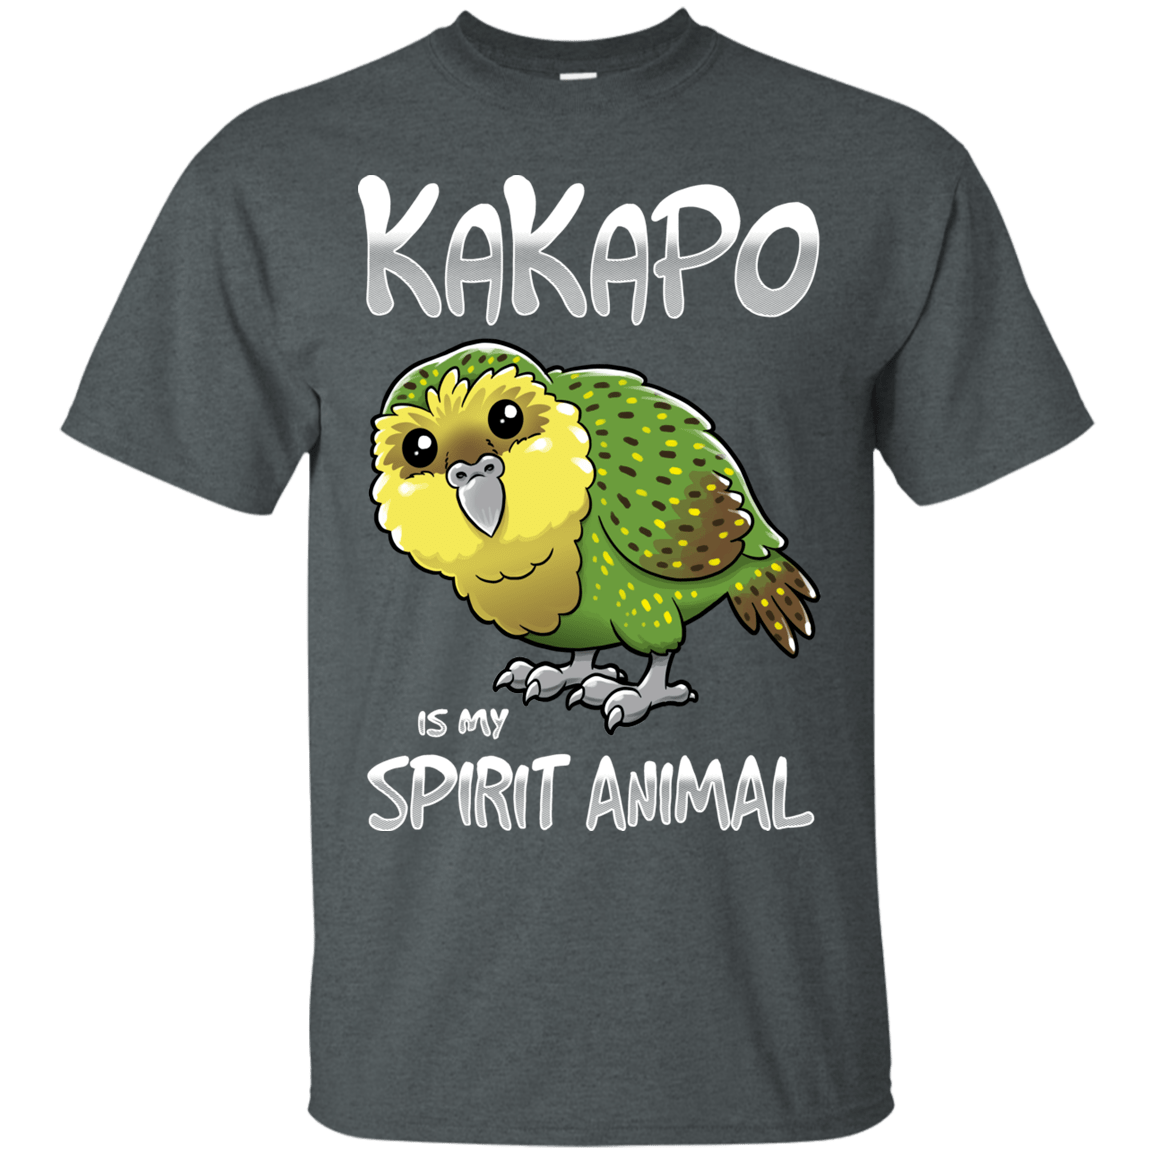 T-Shirts Dark Heather / S Kakapo Spirit Animal T-Shirt